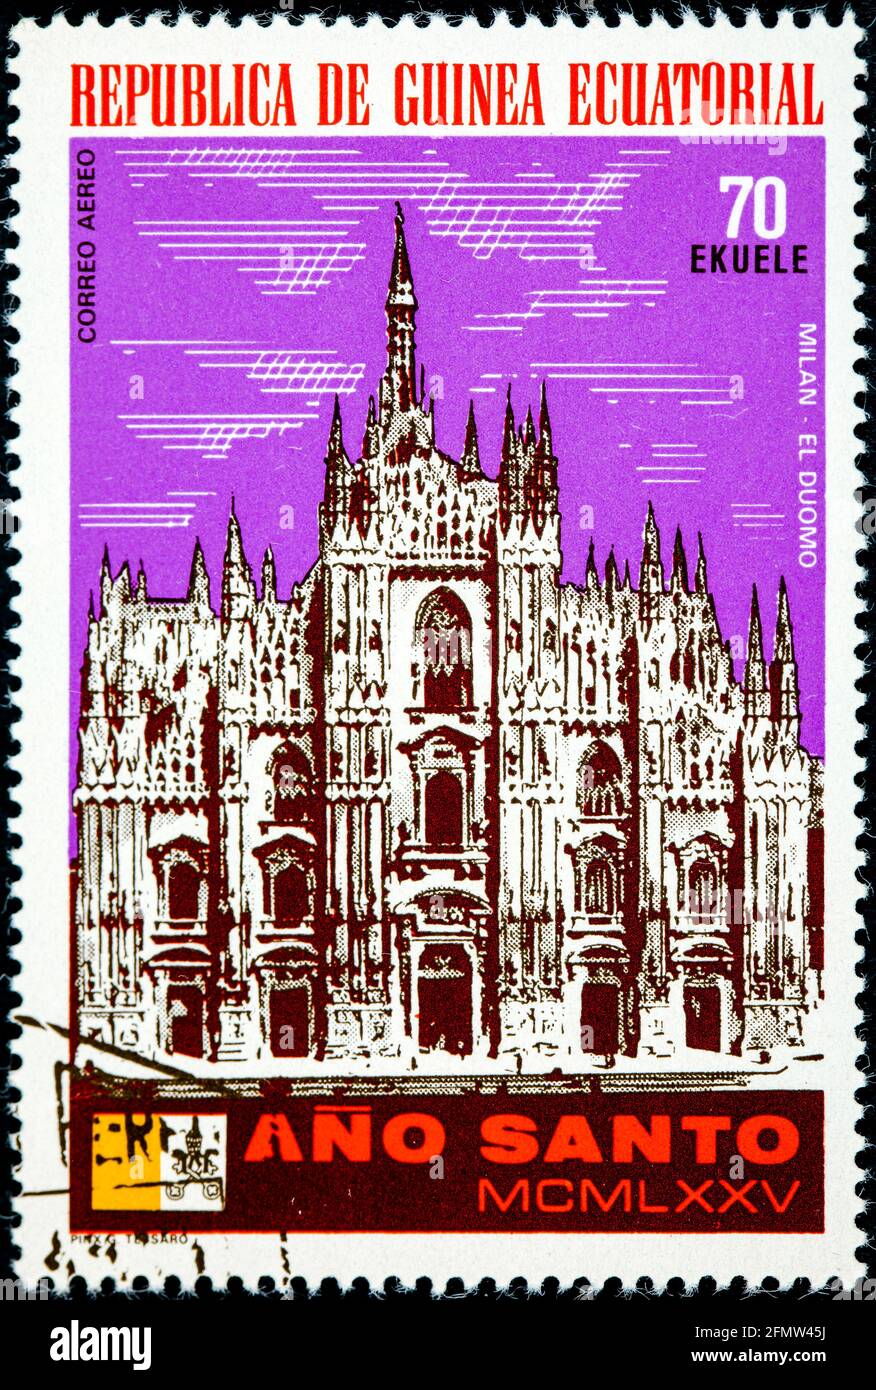 GUINEA EQUATORIALE - CIRCA 1975: Un francobollo stampato in Guinea Equatoriale, anno Santo mostrato Milano, il Duomo circa 1975 Foto Stock